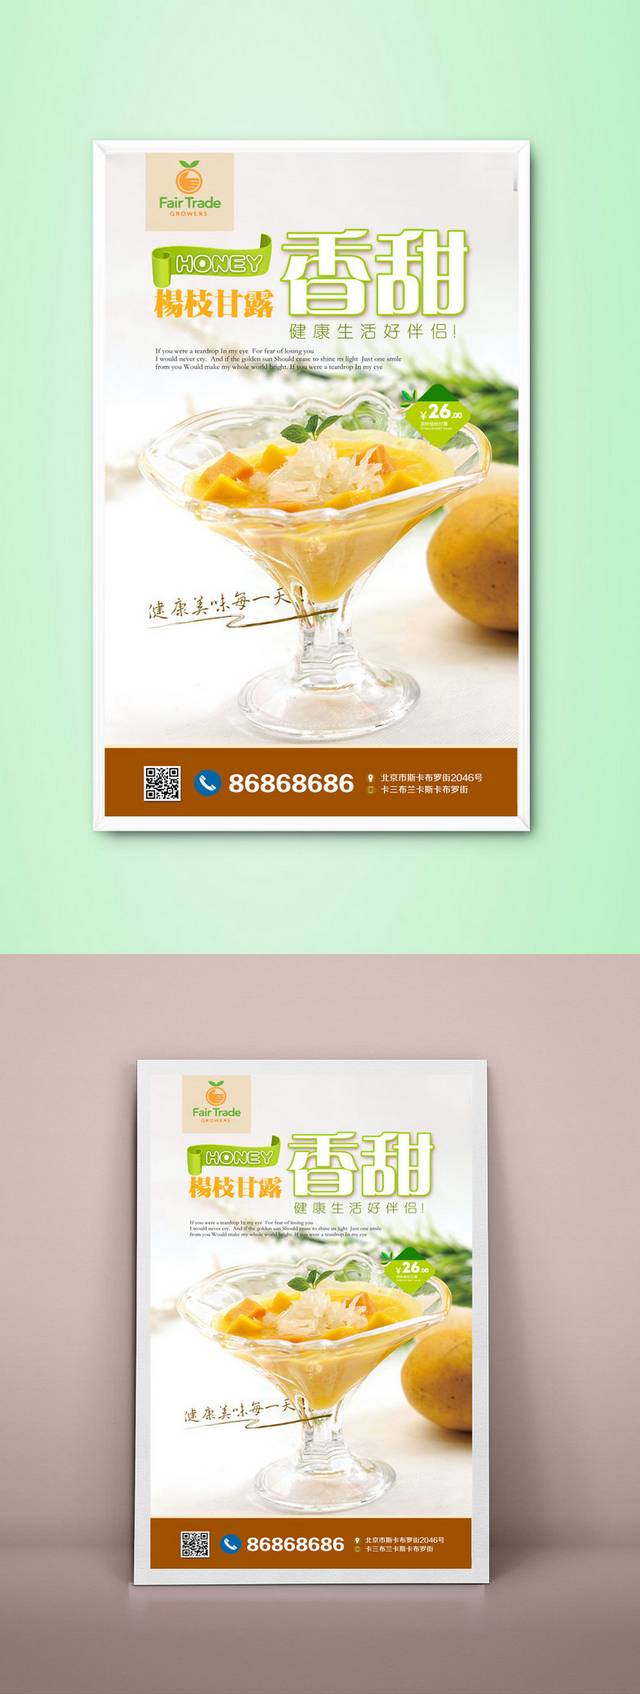 高档杨枝甘露宣传海报设计